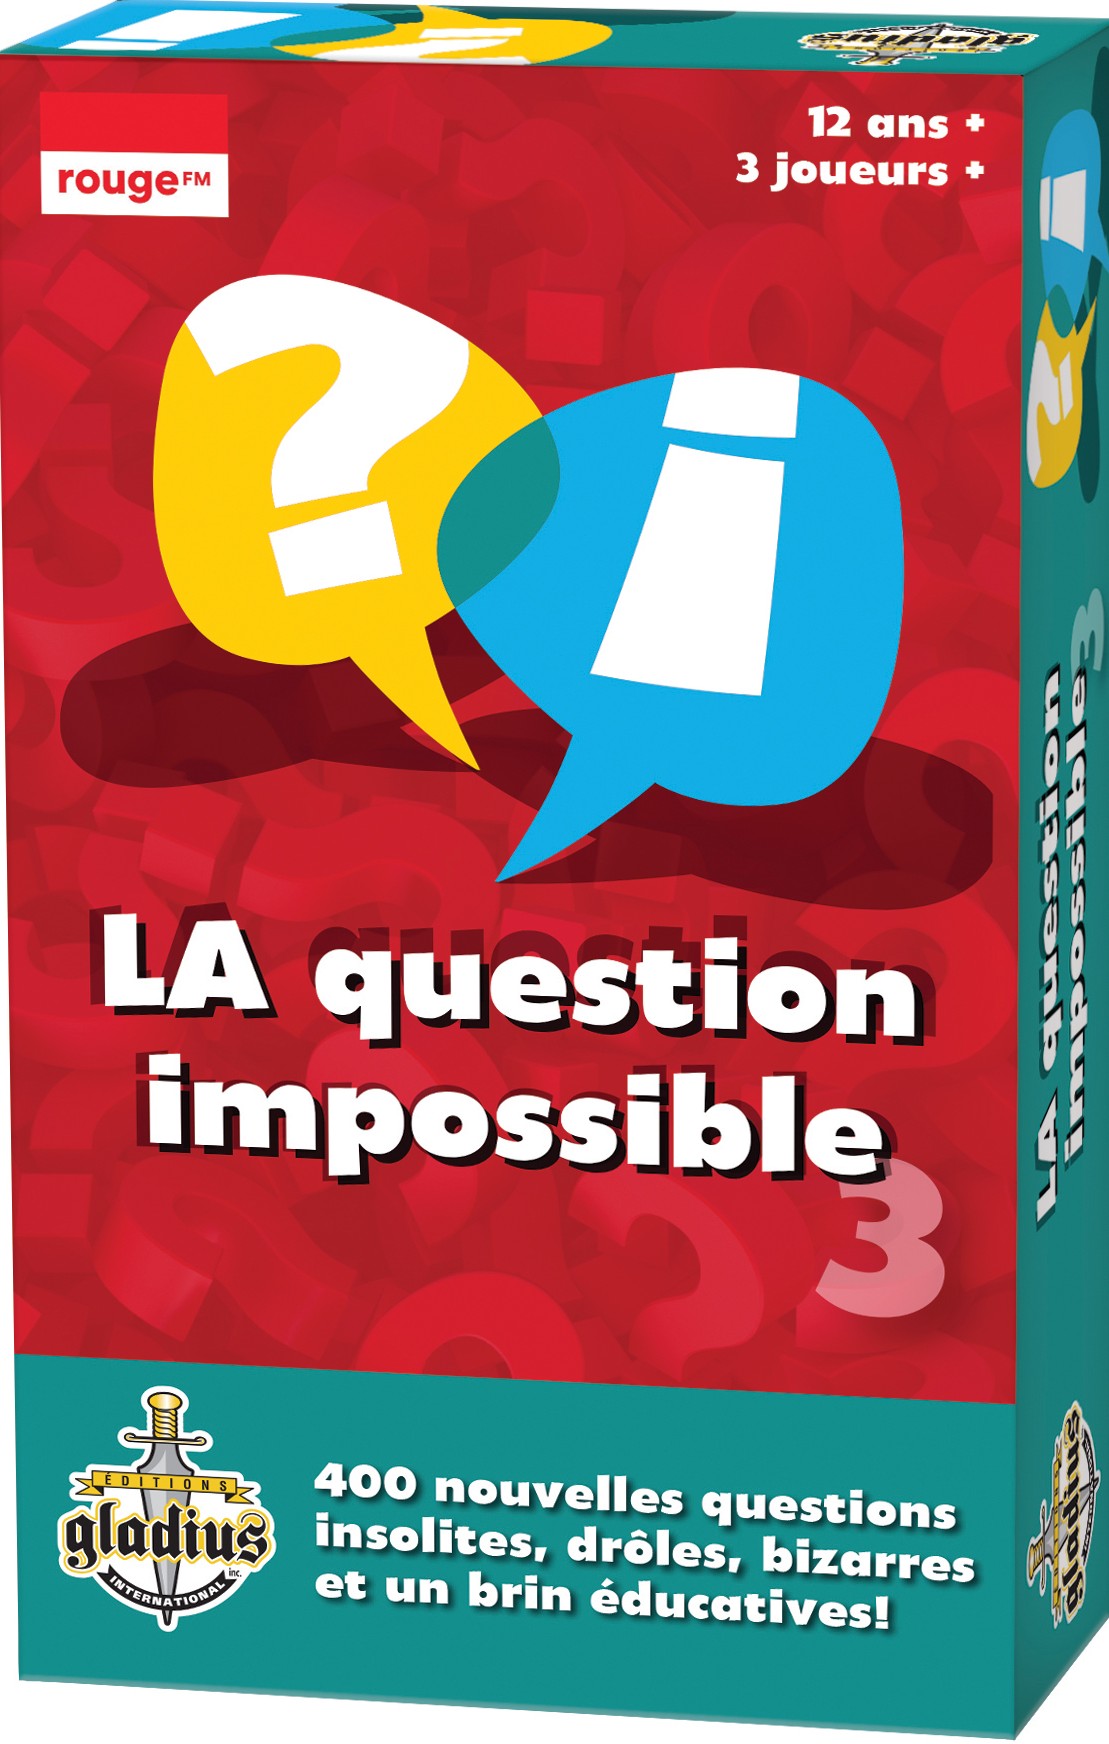 Boîte du jeu La question impossible vol. 3